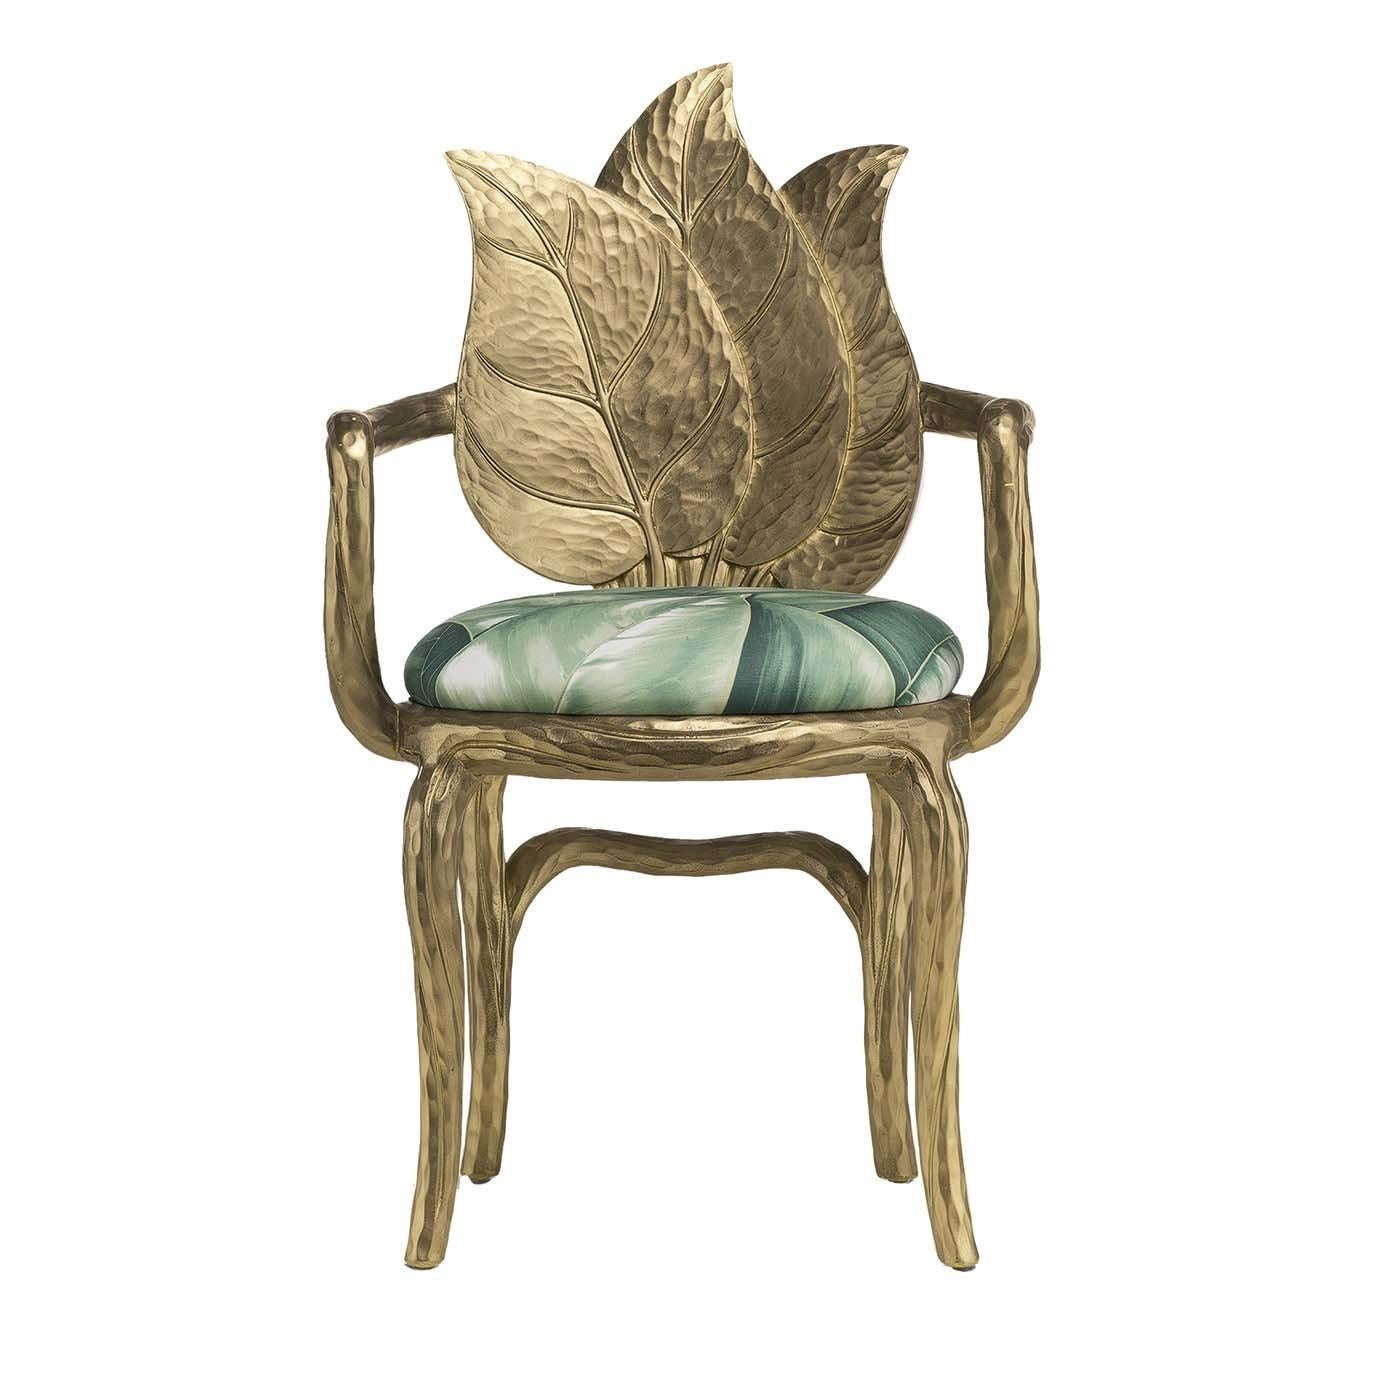 Dieser elegante Stuhl ist direkt von der Anmut und Eleganz der Pflanzen inspiriert und schafft einen eklektischen Look, der einem modernen Esszimmer einen einzigartigen Charme verleiht. Die Struktur dieses Stücks ist aus Holz und erinnert mit seiner